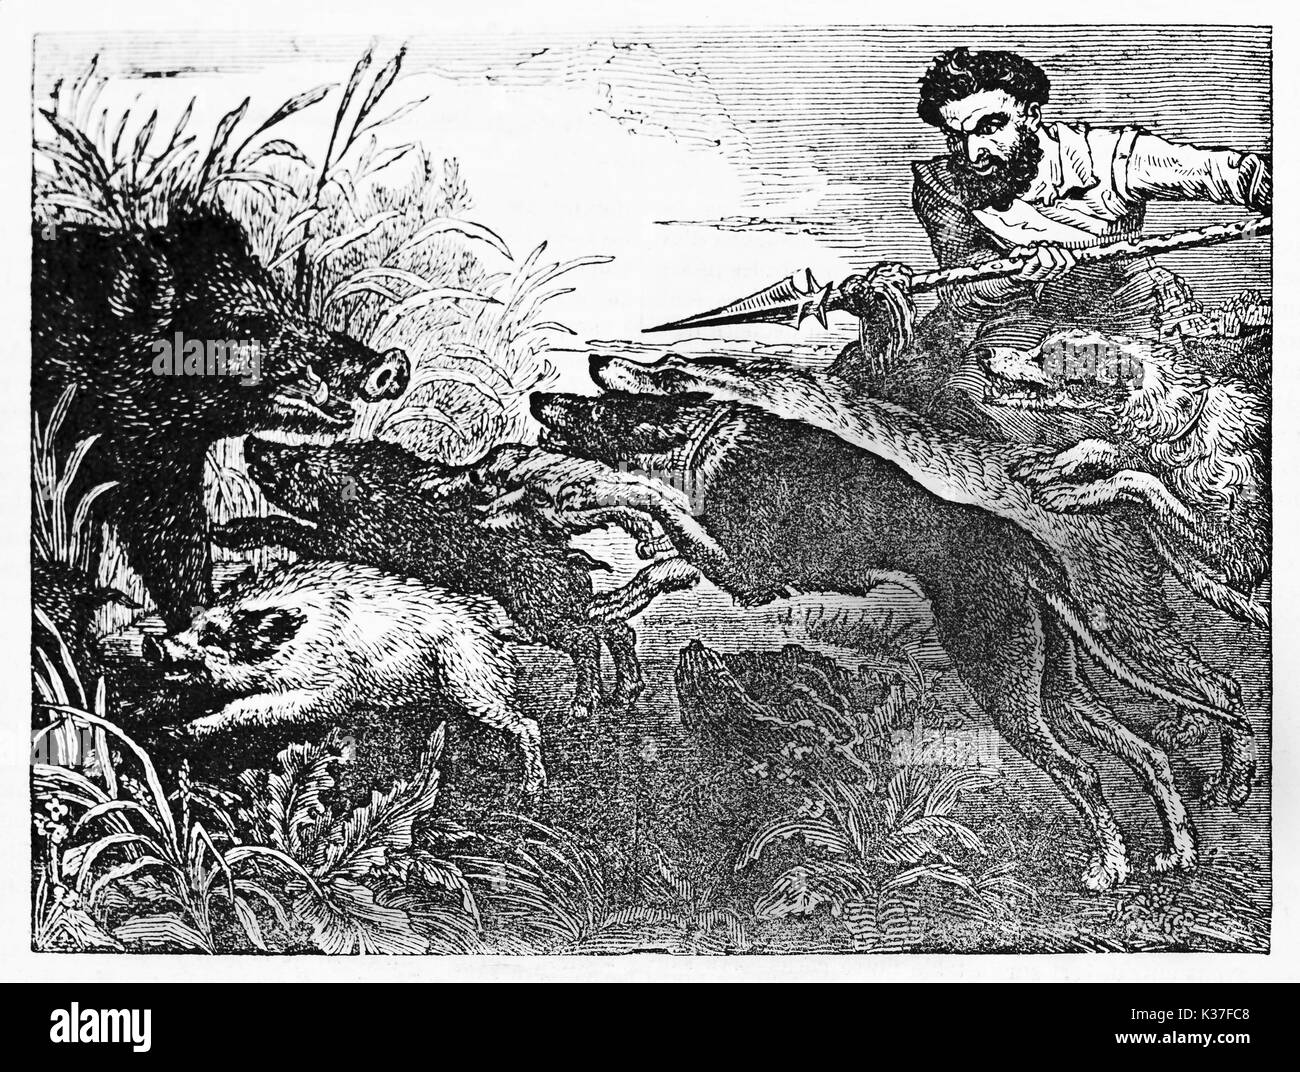 Mittelalterliche Jäger Holding einen Speer und seine Hunde gegen ein Wildschwein versteckt sich in einem Busch mit seinen Welpen. Alte Illustration von unbekannter Autor auf Magasin Pittoresque Paris 1834 veröffentlicht. Stockfoto